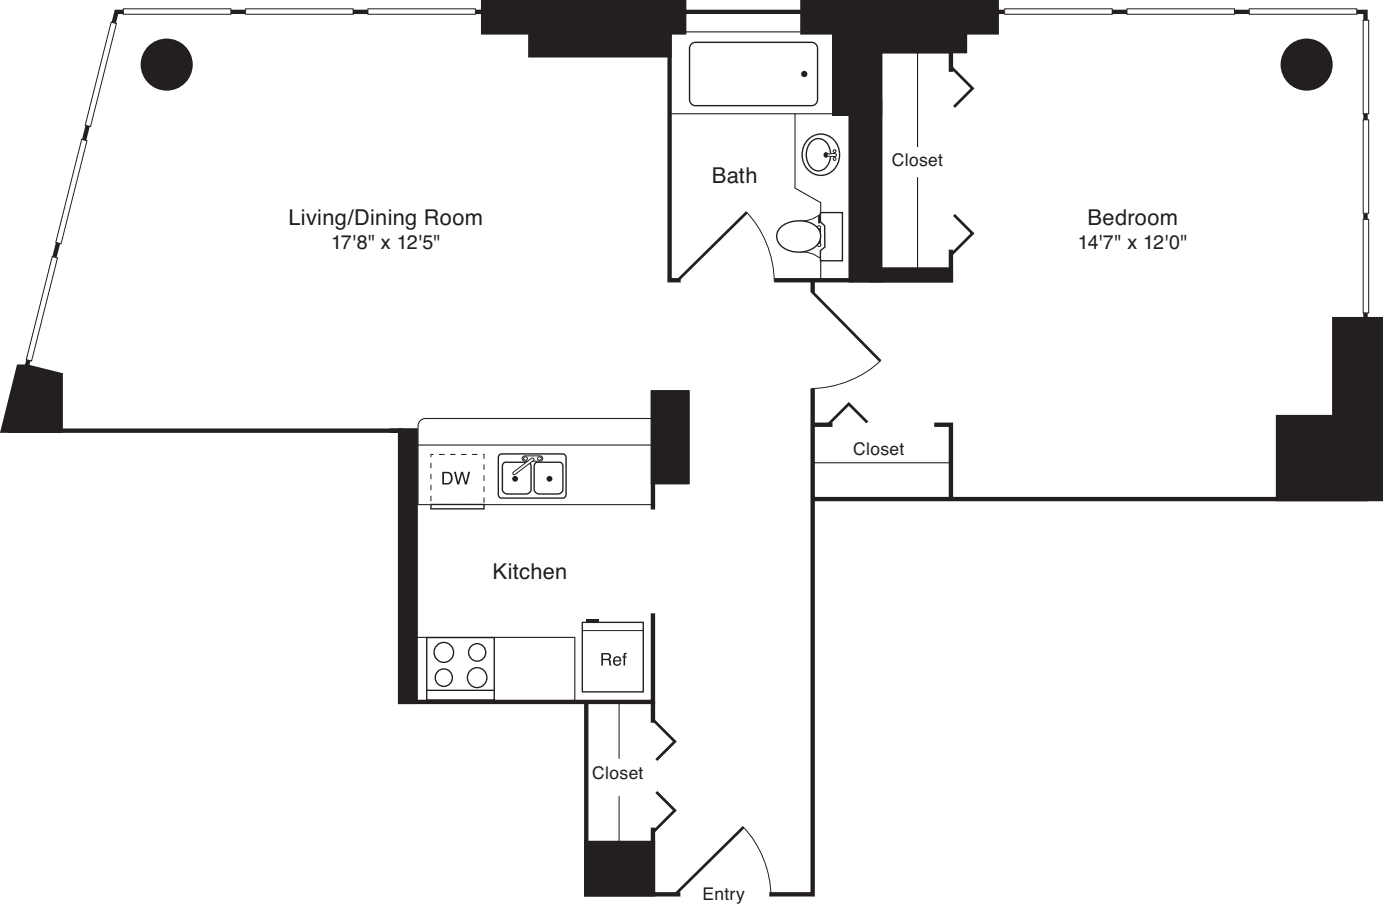 Residence E, floors 10-17 - Residence A, floor 9